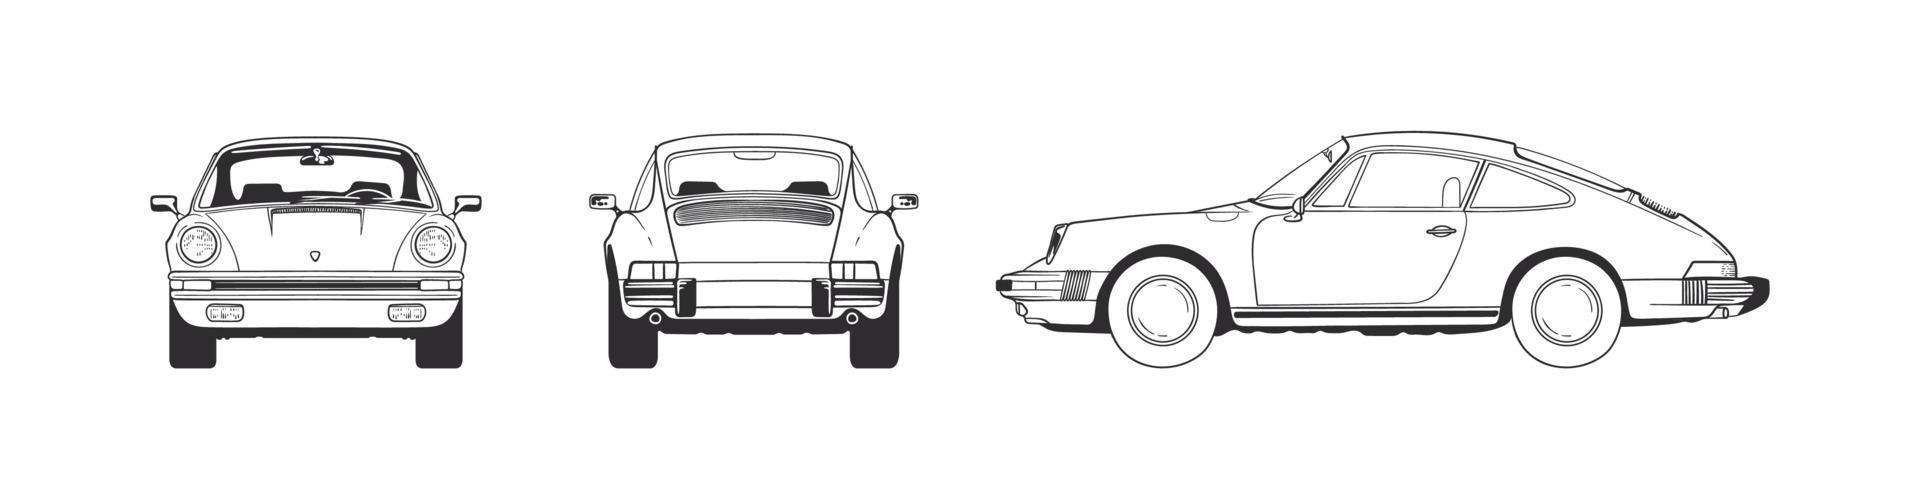 carro esporte. carro desenhado à mão frente traseira superior e vista lateral. ilustração vetorial vetor